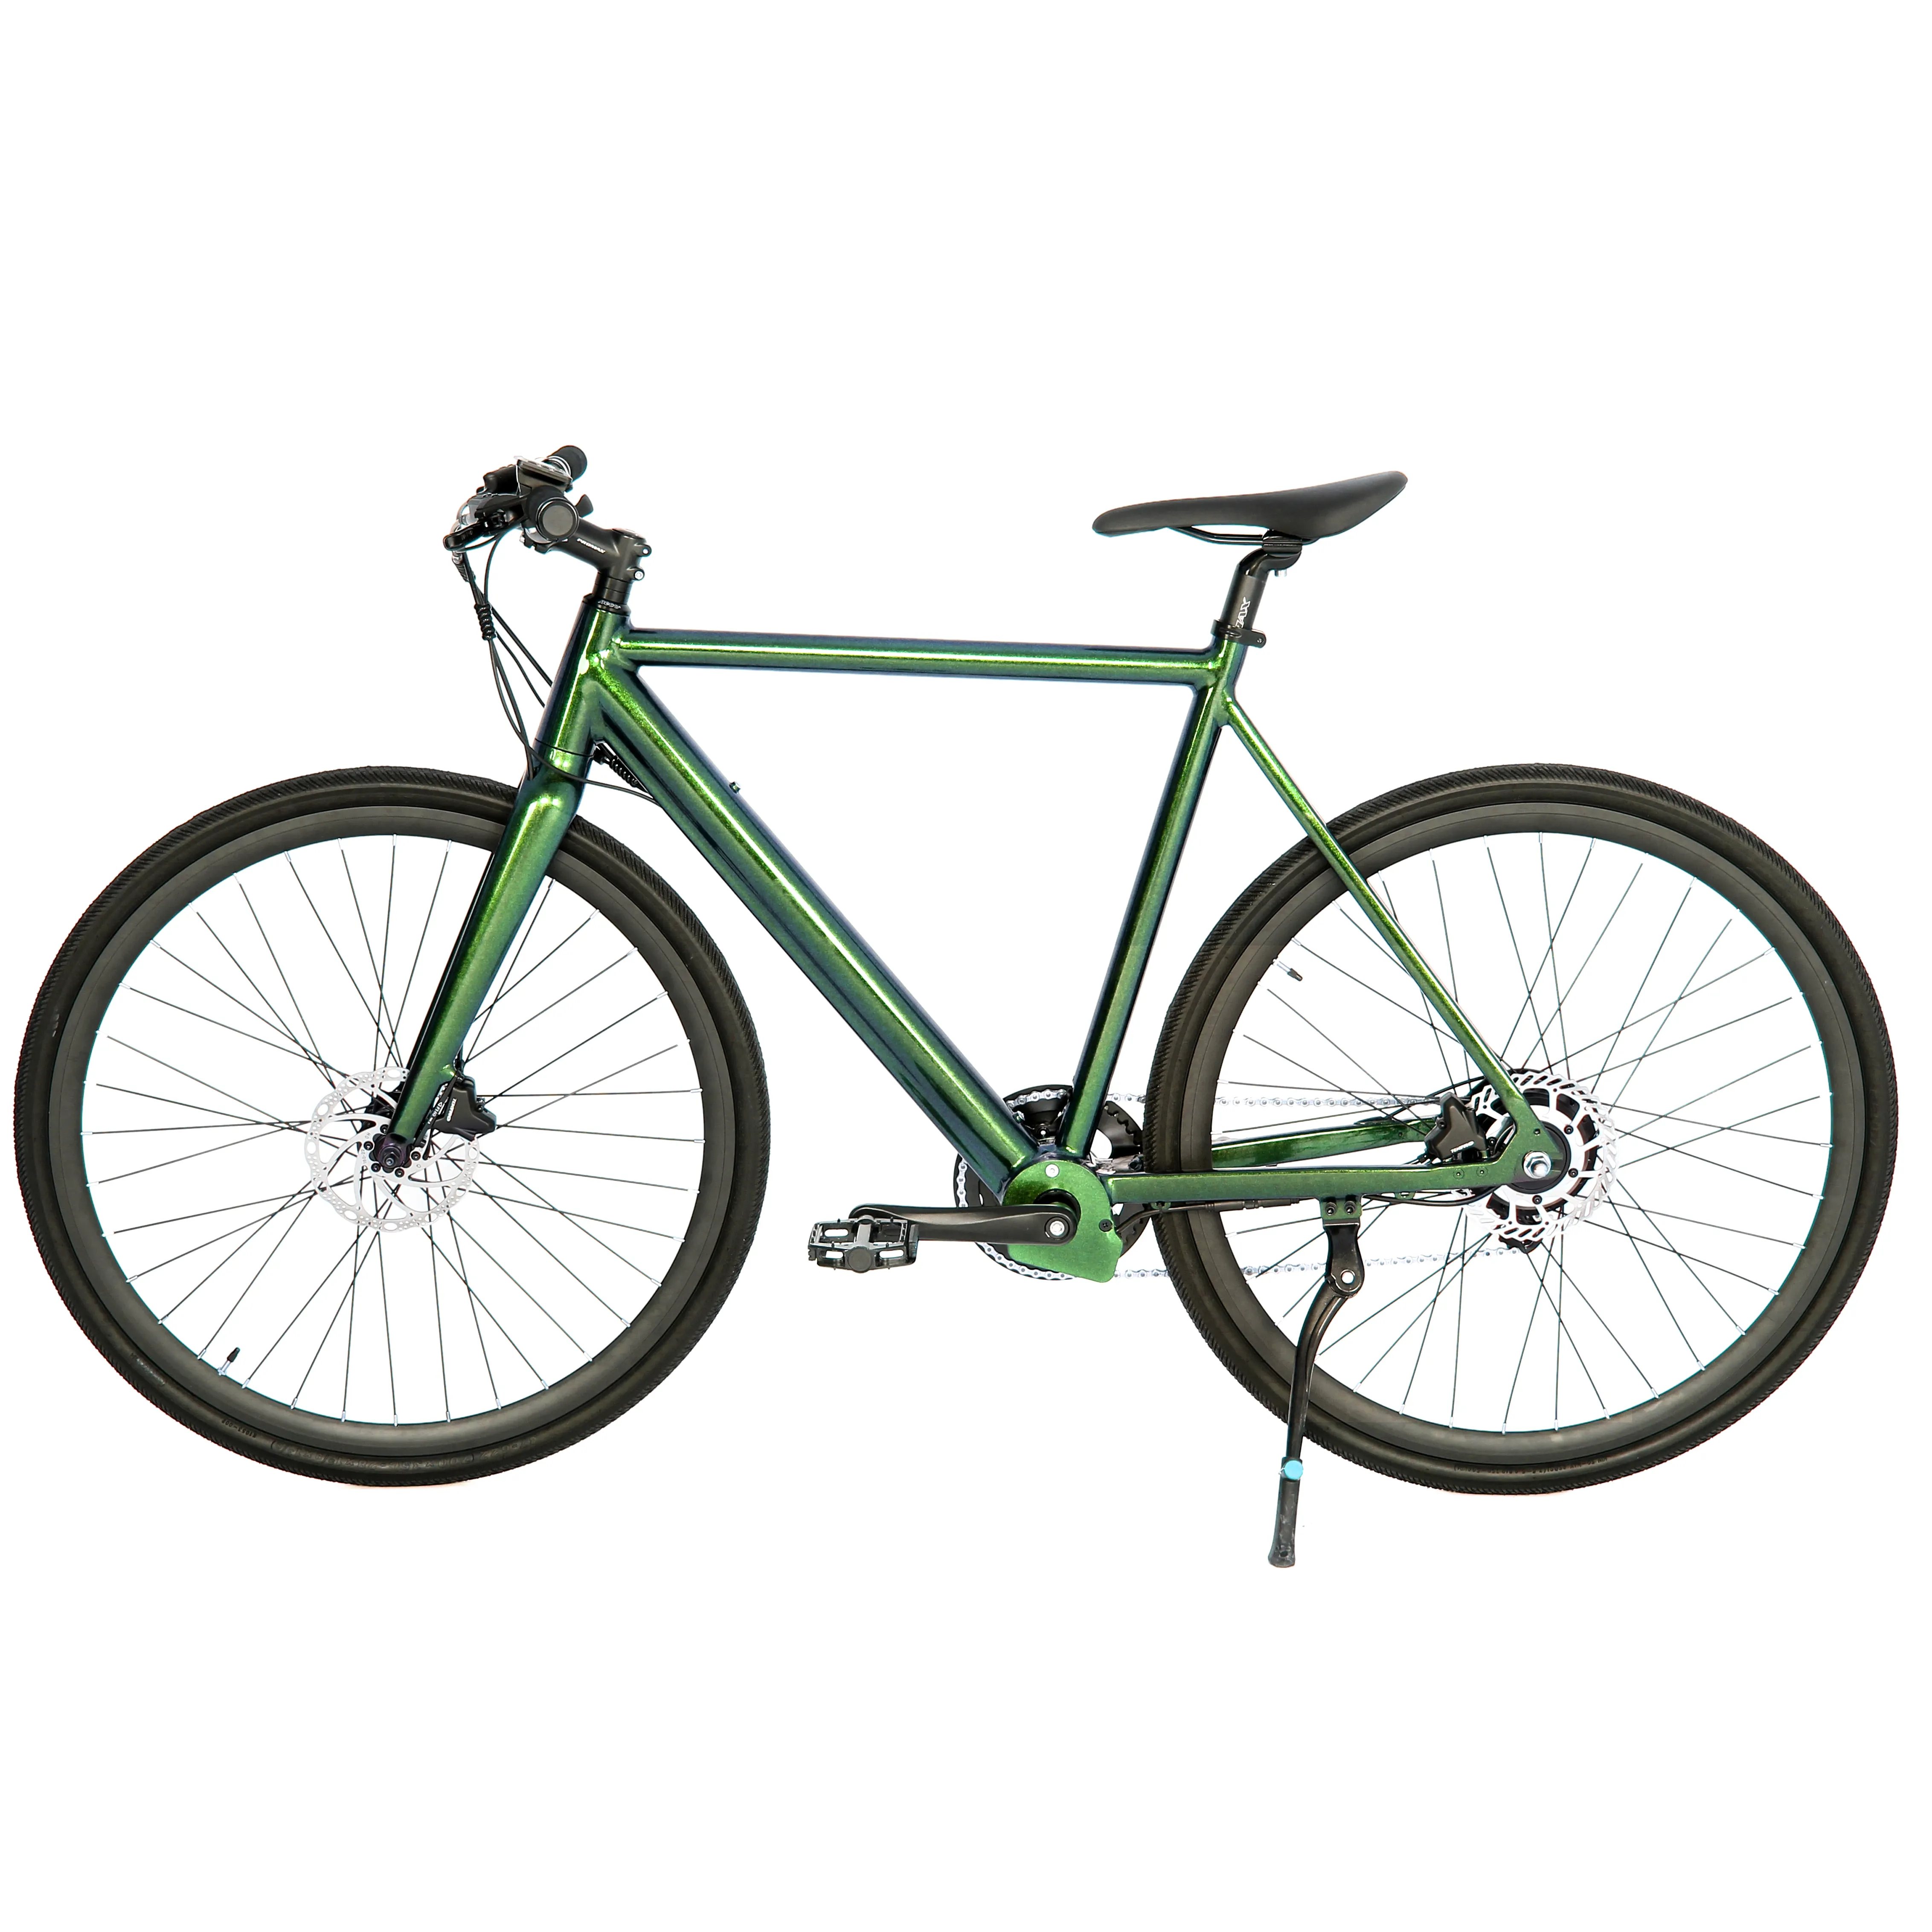 Электровелосипед Elyx Elfin версии пояса 2,0, шоссейный велосипед 250 Вт/300 Вт, литиевый аккумулятор, 8 передач, электрический велосипед